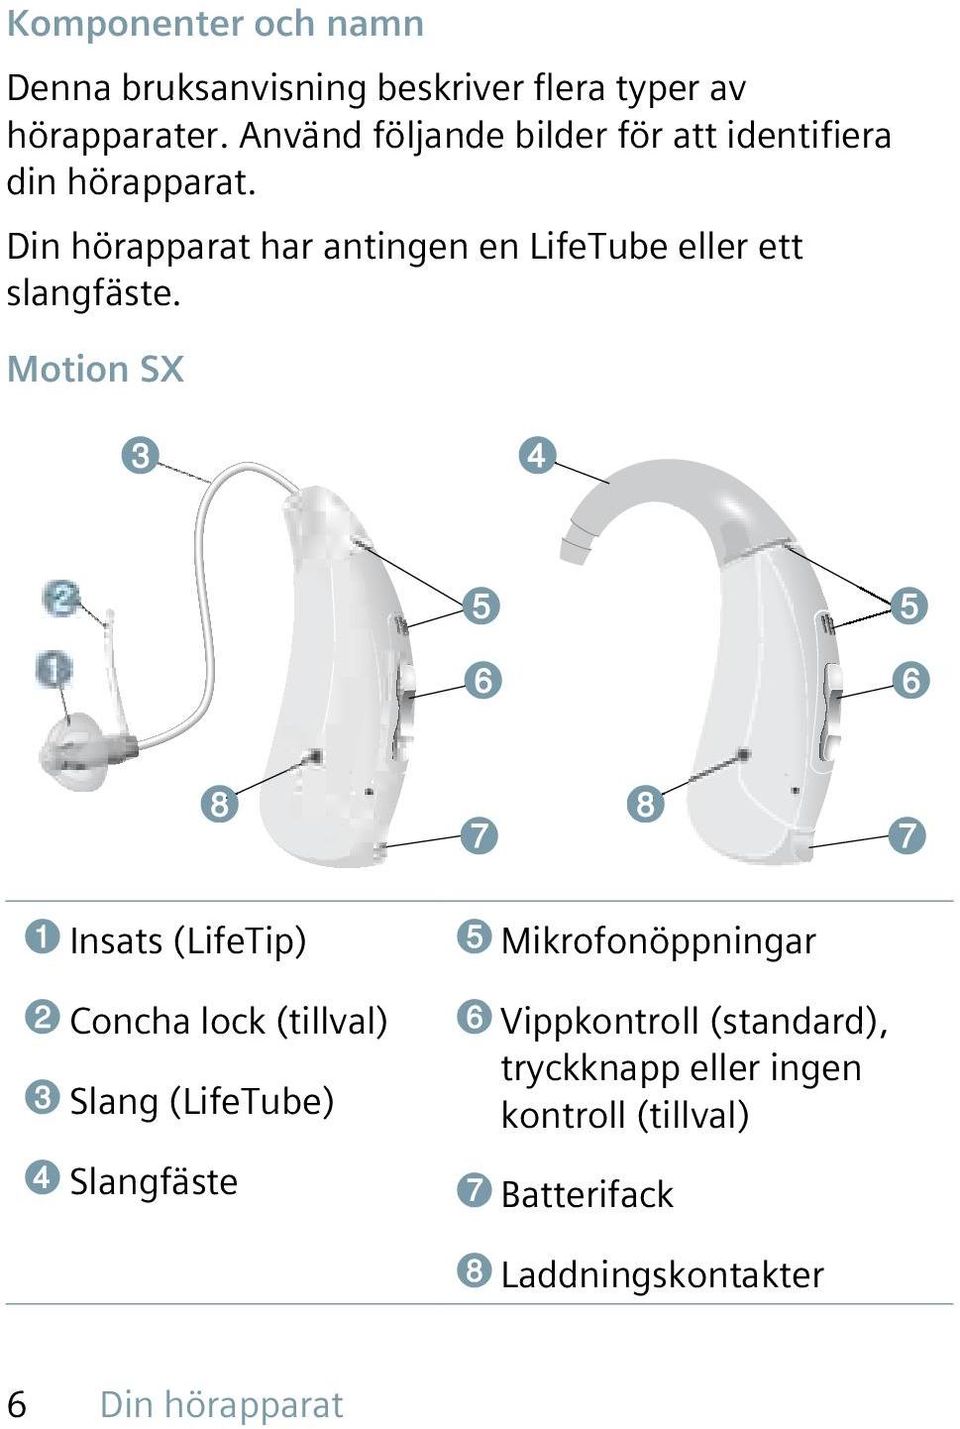 Din hörapparat har antingen en LifeTube eller ett slangfäste.